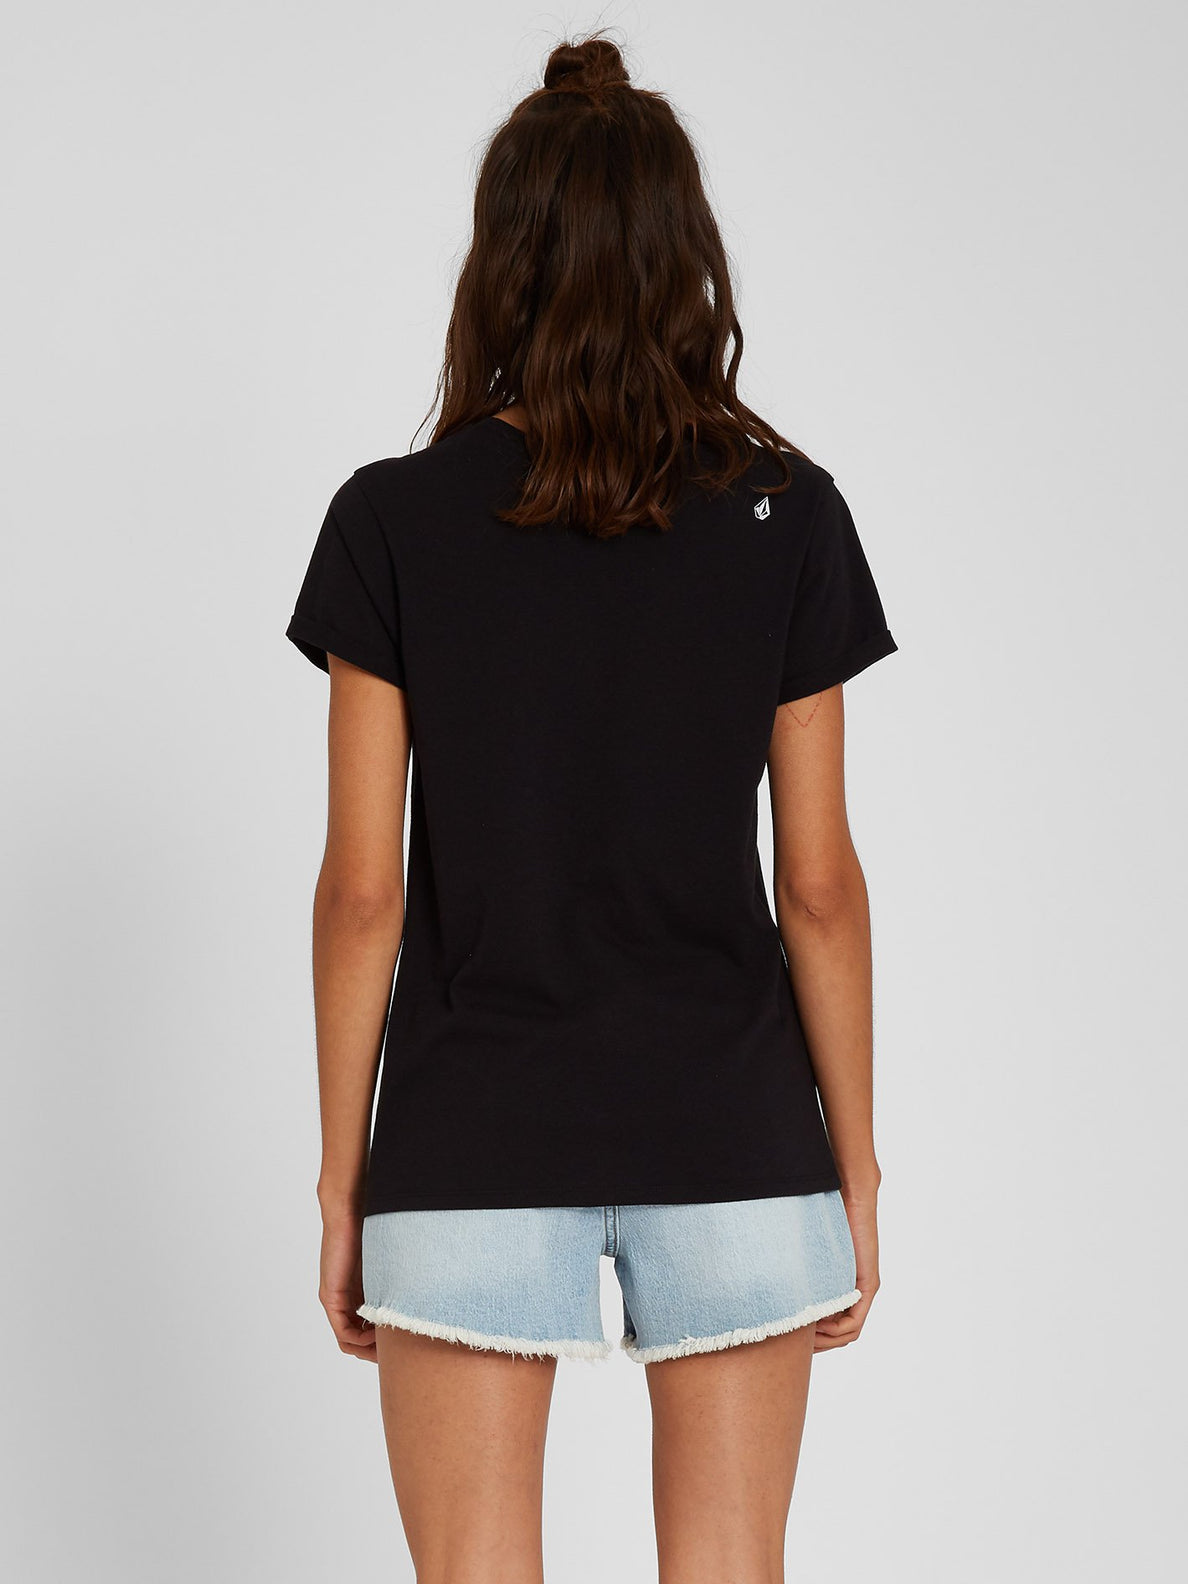 Radical Daze T-shirt - Black (B3512115_BLK) [B]